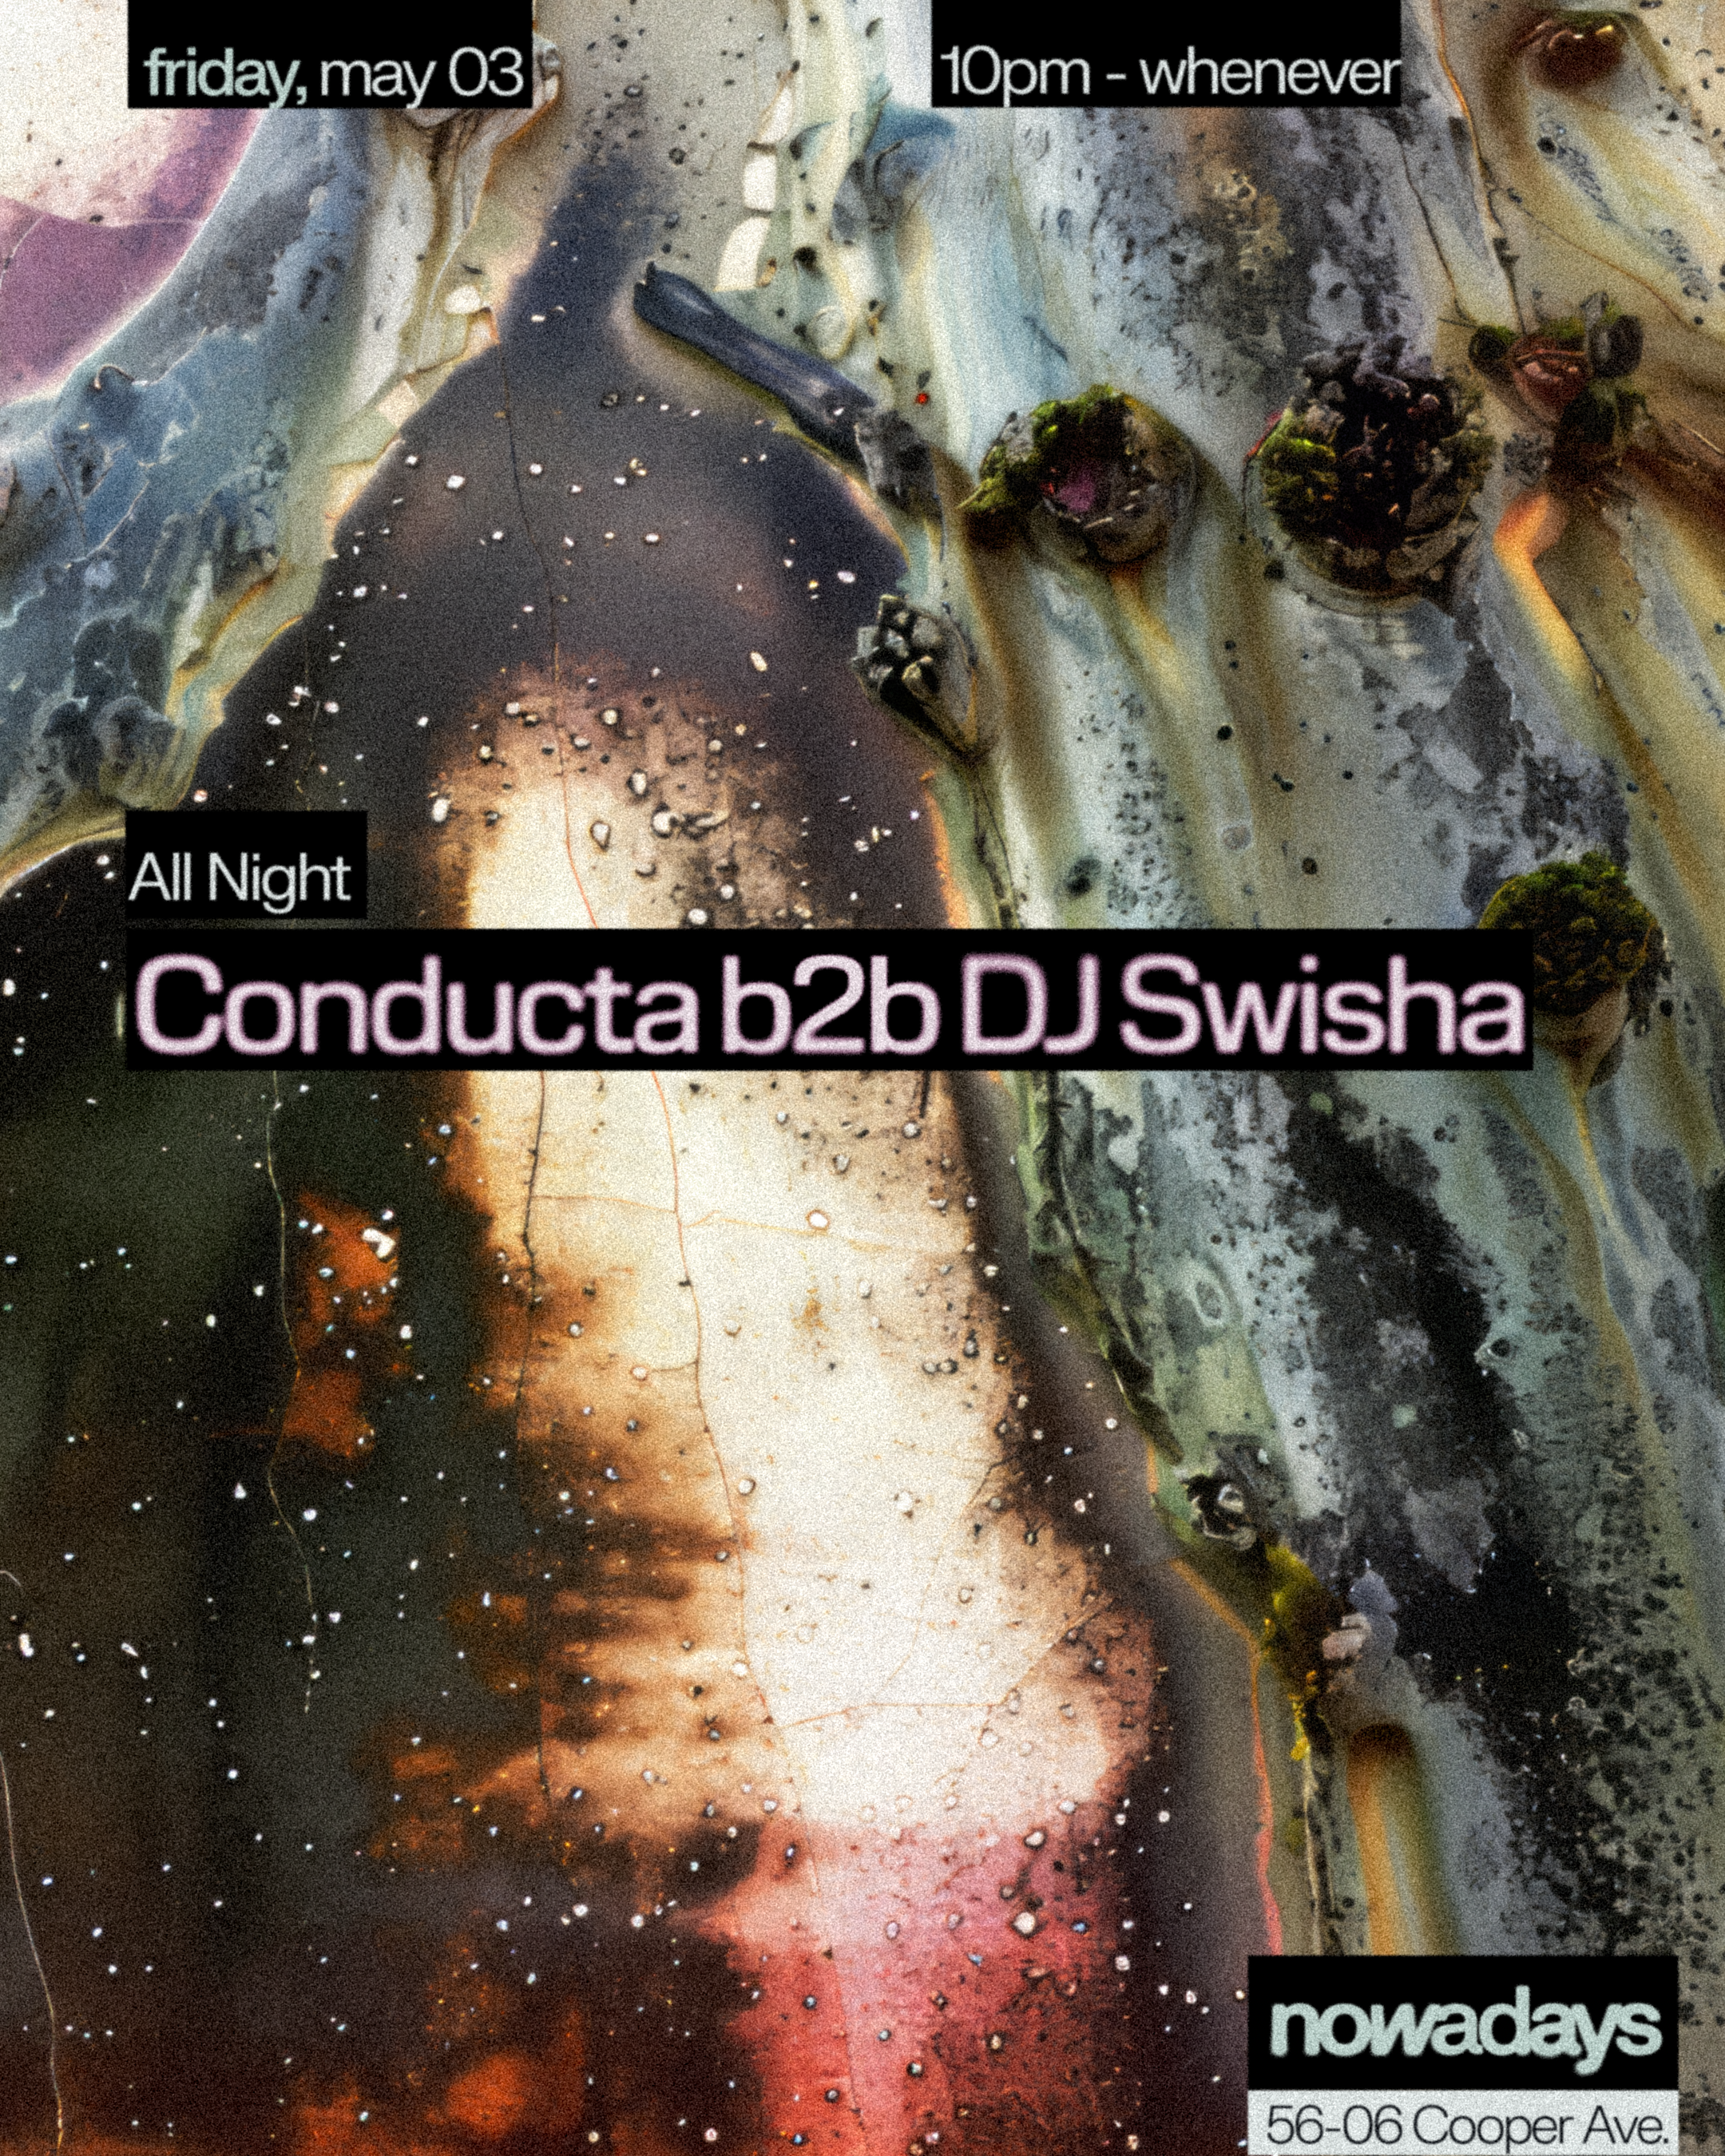 Conducta b2b DJ SWISHA All Night - Página frontal